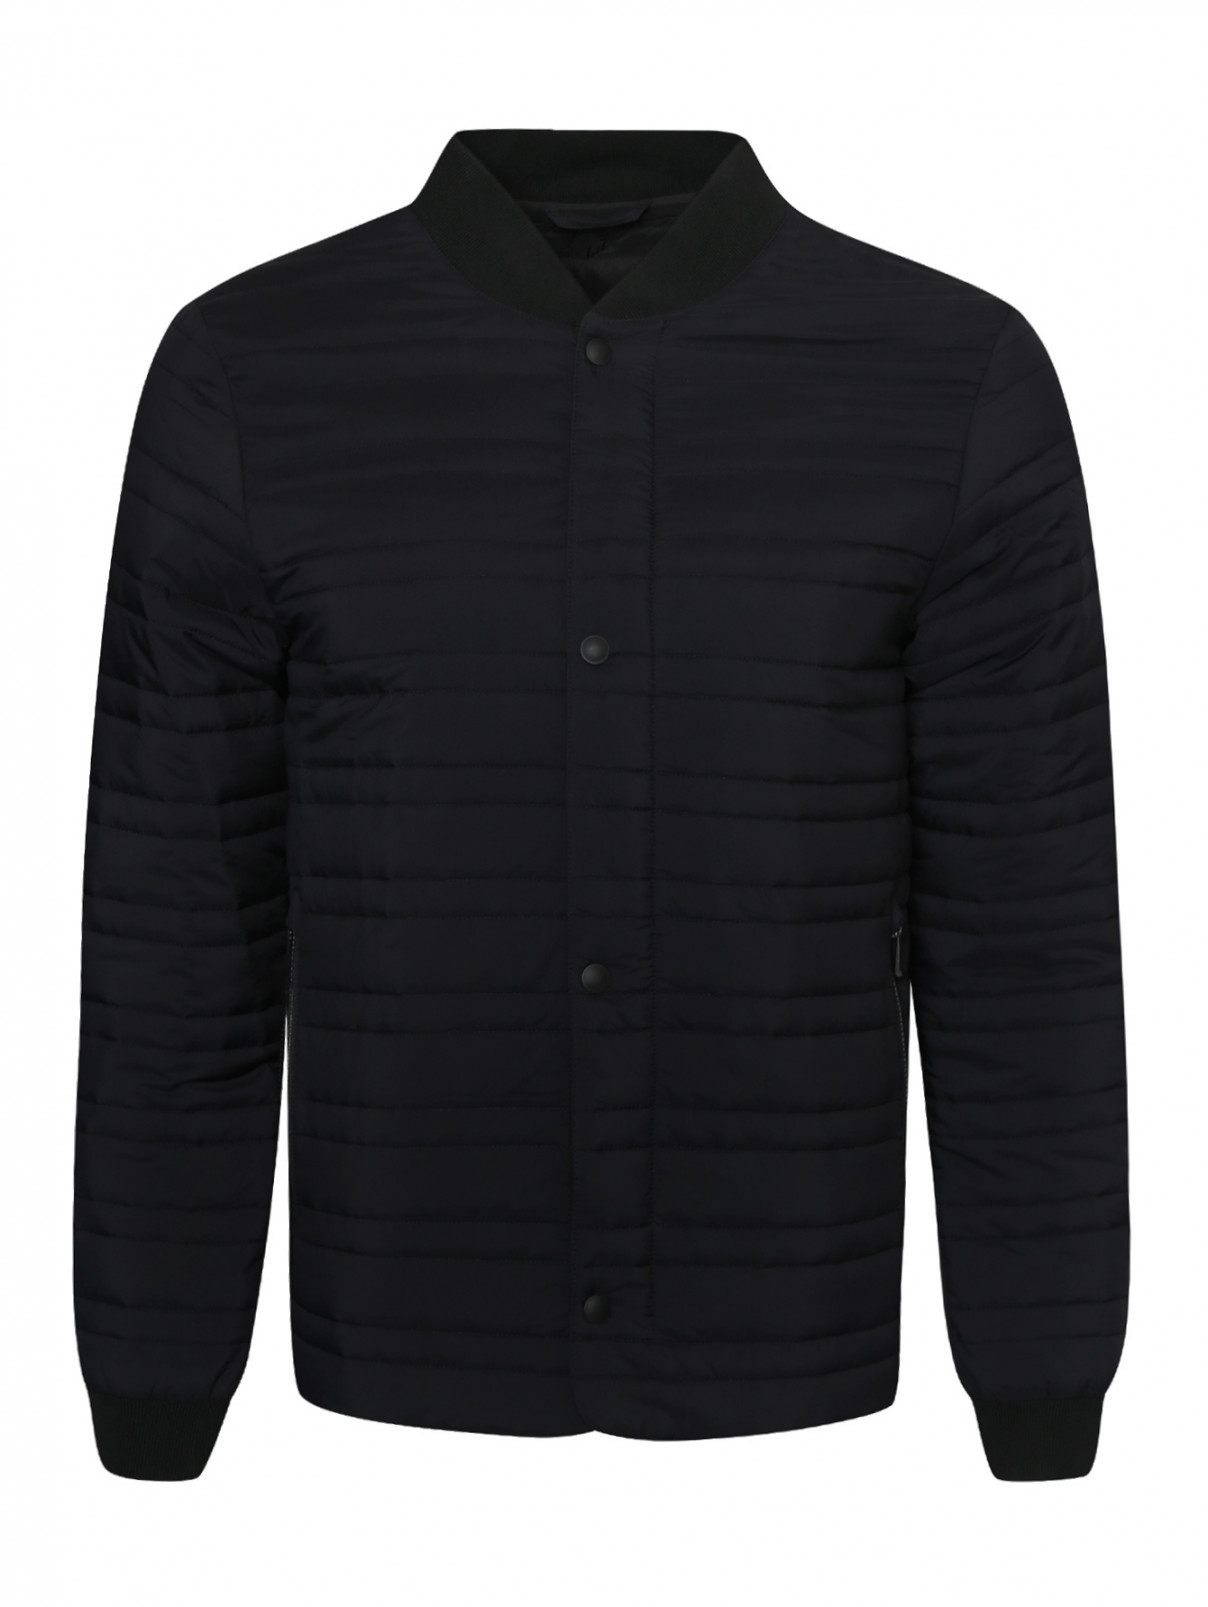 Куртка стеганая на молнии Ermenegildo Zegna  –  Общий вид  – Цвет:  Черный